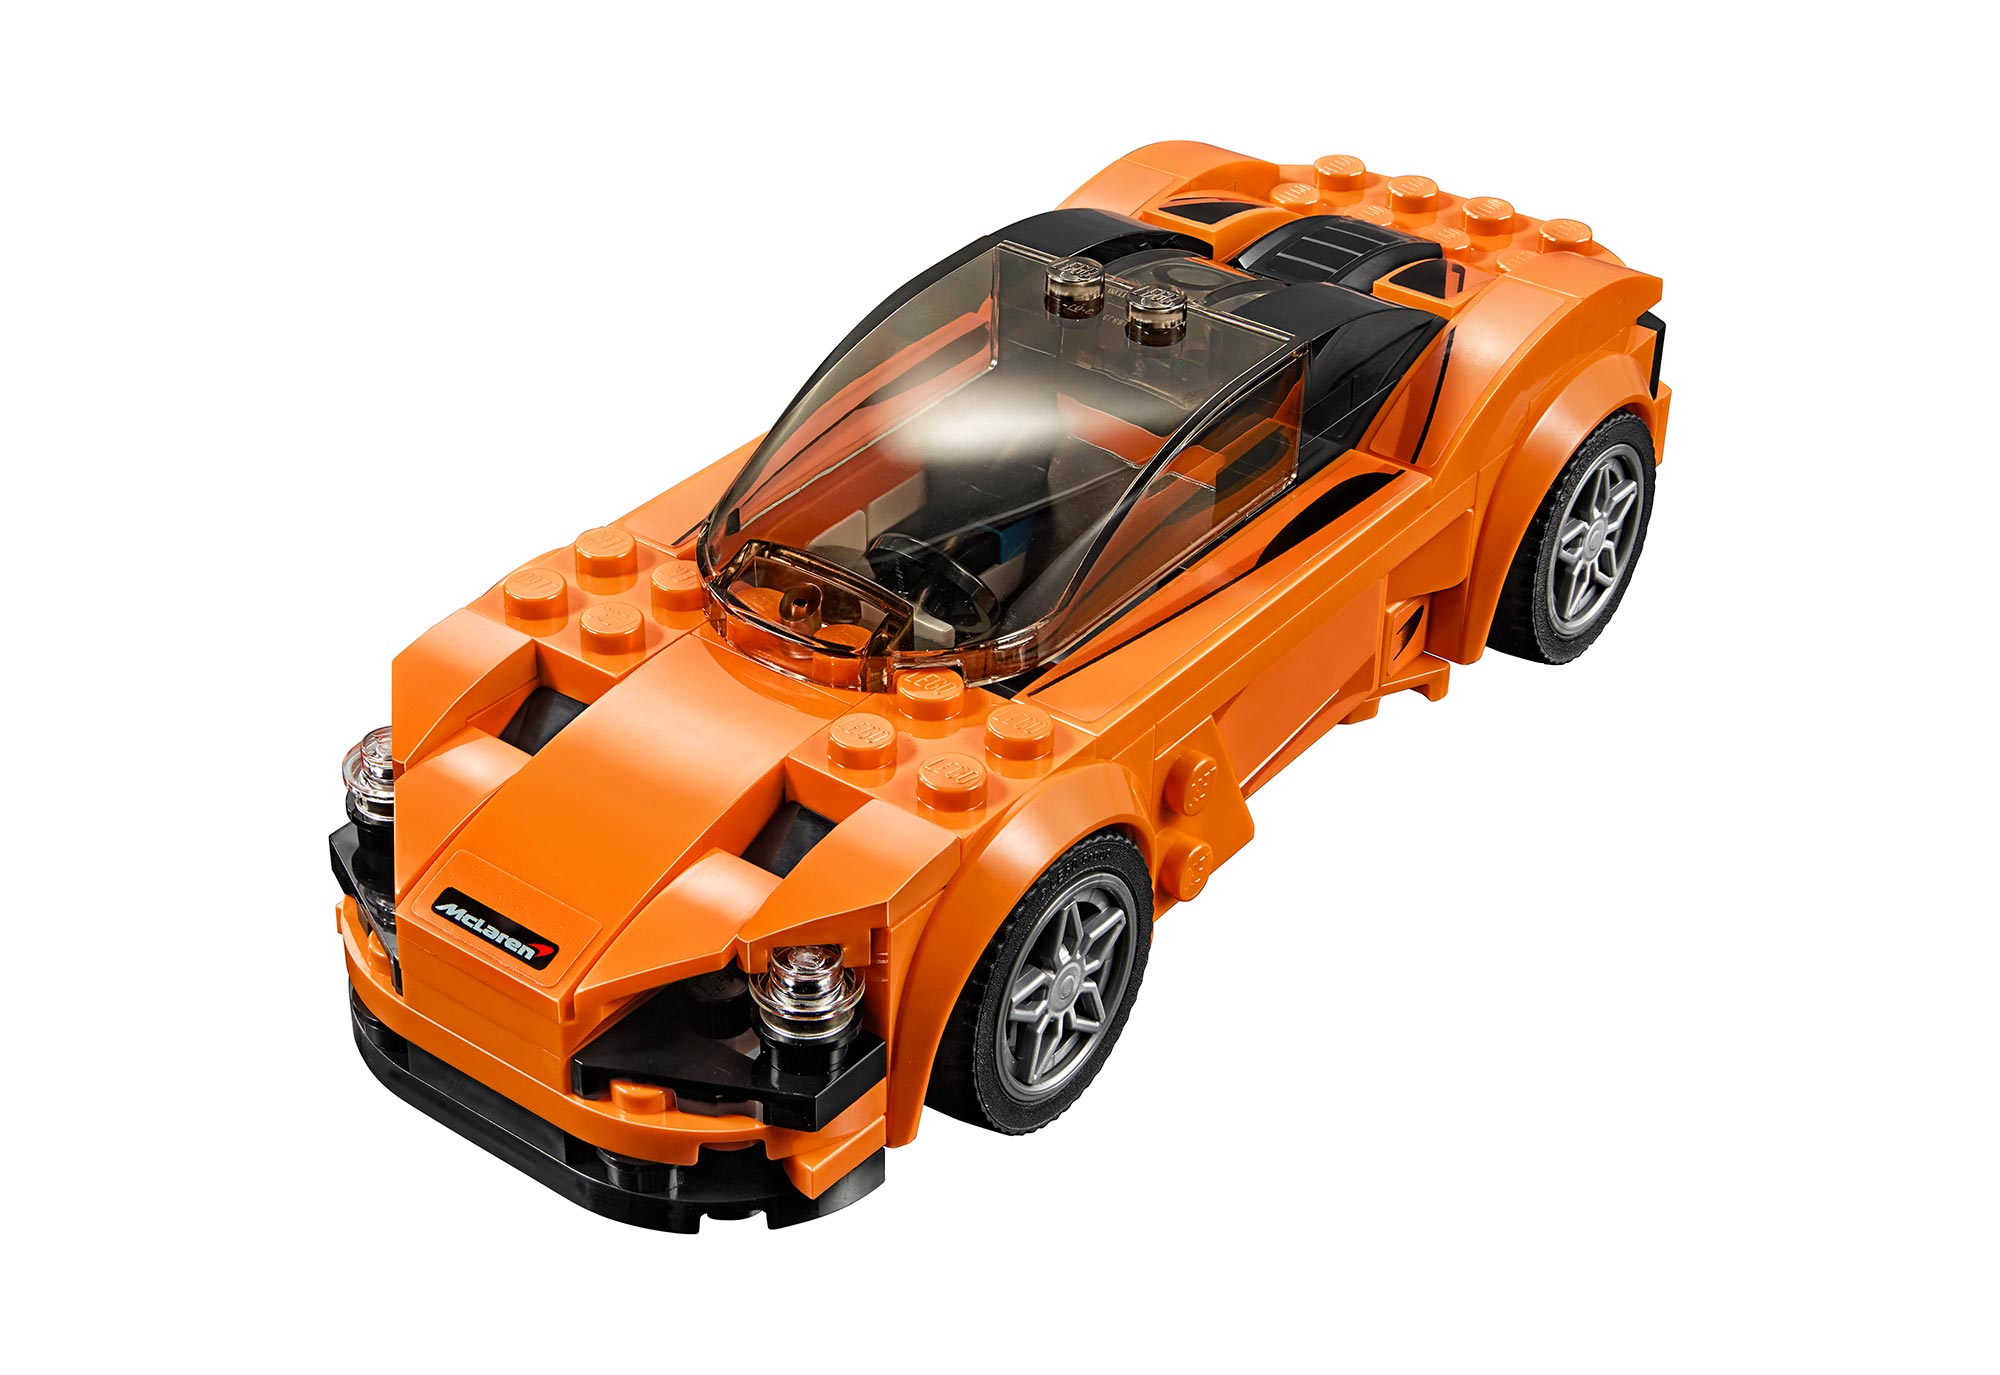 040417_McLaren-LEGO-720S_75880_Front_01.jpg